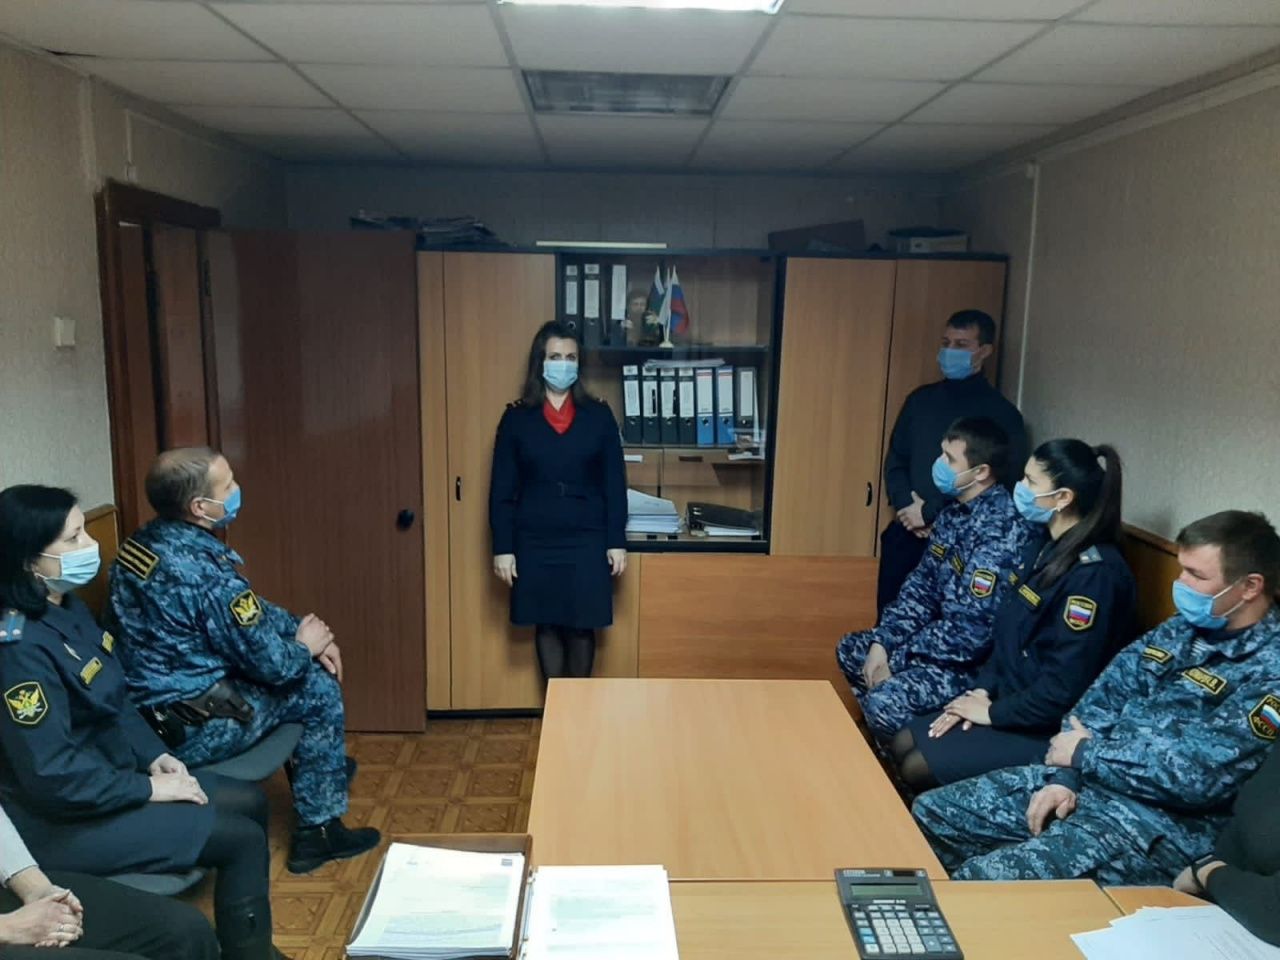  Полиция Североуральска продолжает мероприятия по профилактике дистанционного мошенничества